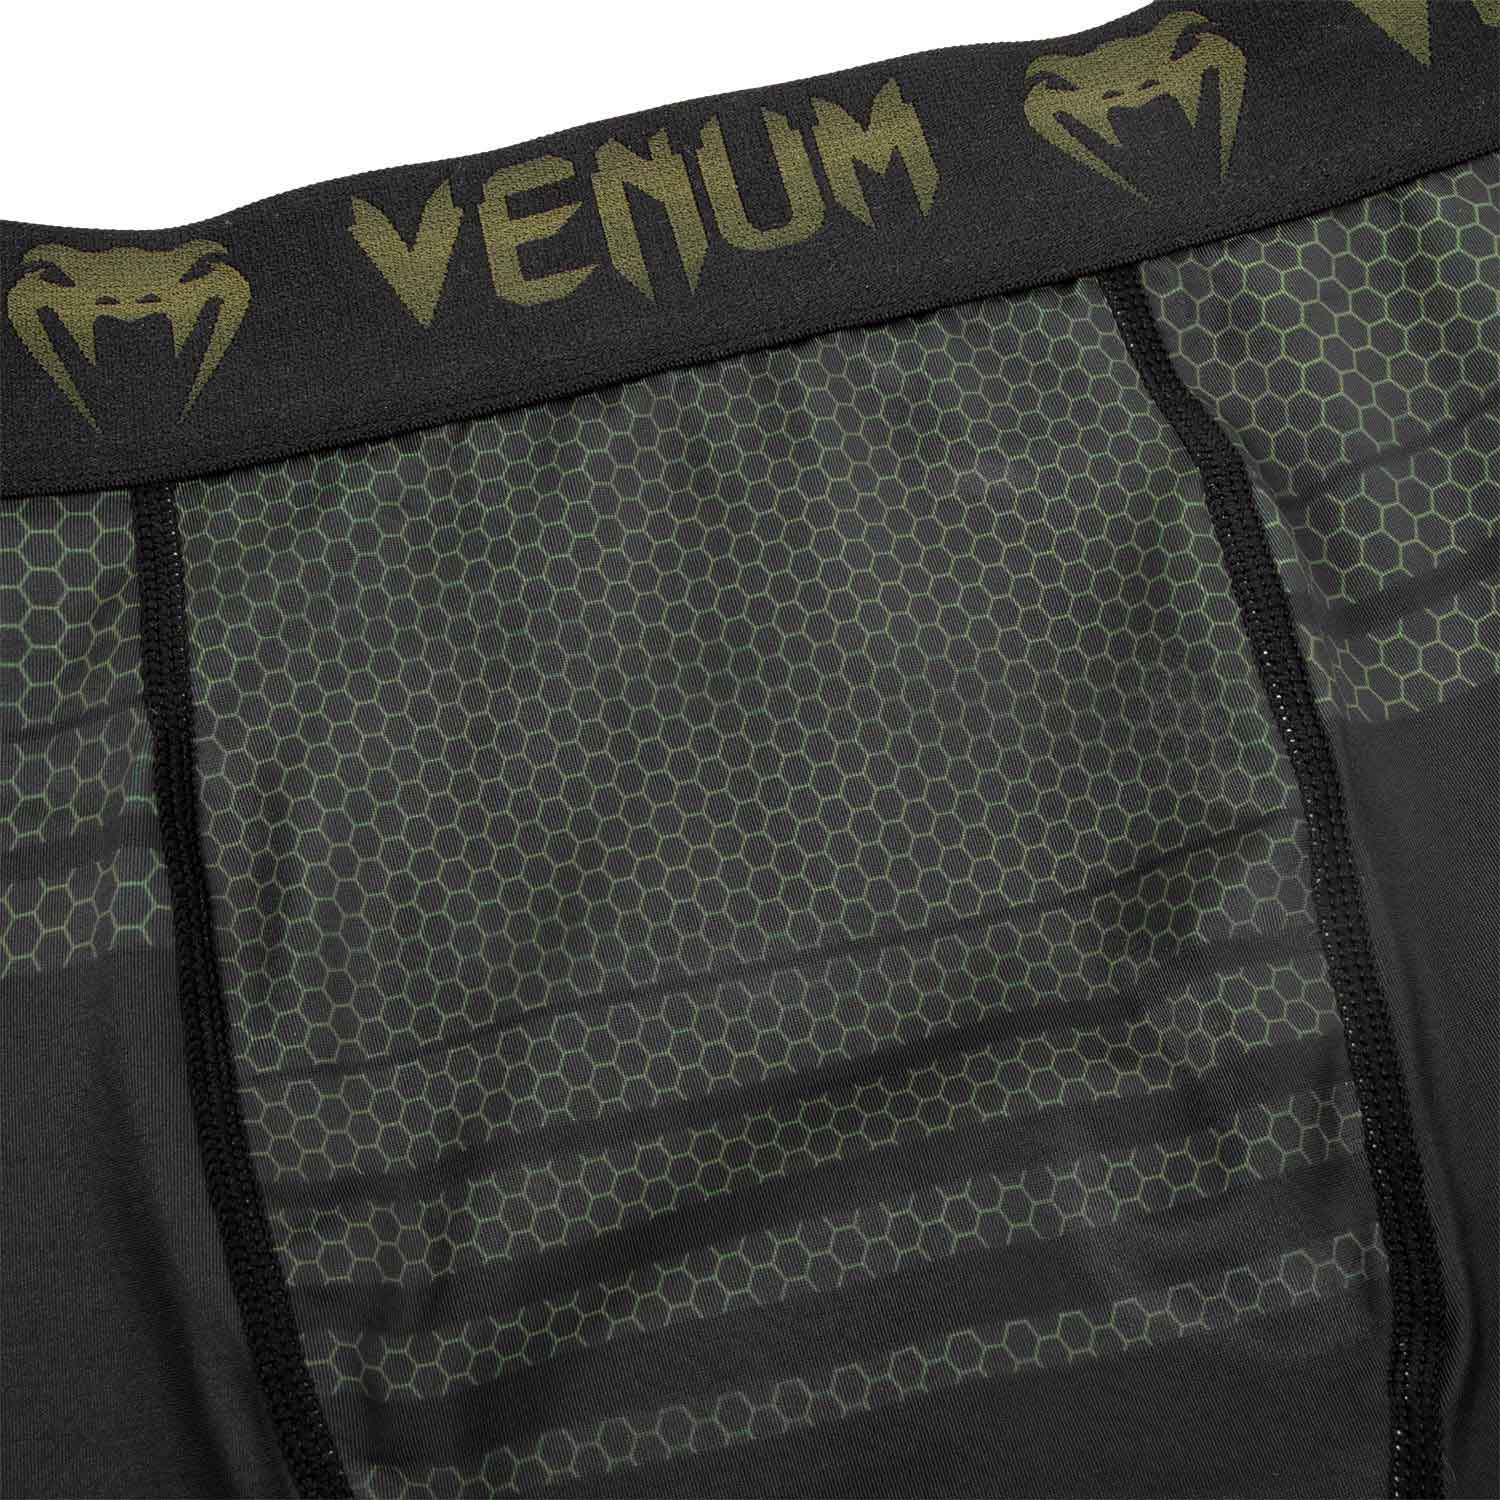 VENUM／ヴェナム　コンプレッション・バーリトゥードショーツ　　TECHNICAL 2.0 COMPRESSION SHORTS／テクニカル 2.0 コンプレッションショーツ（黒／カーキ）